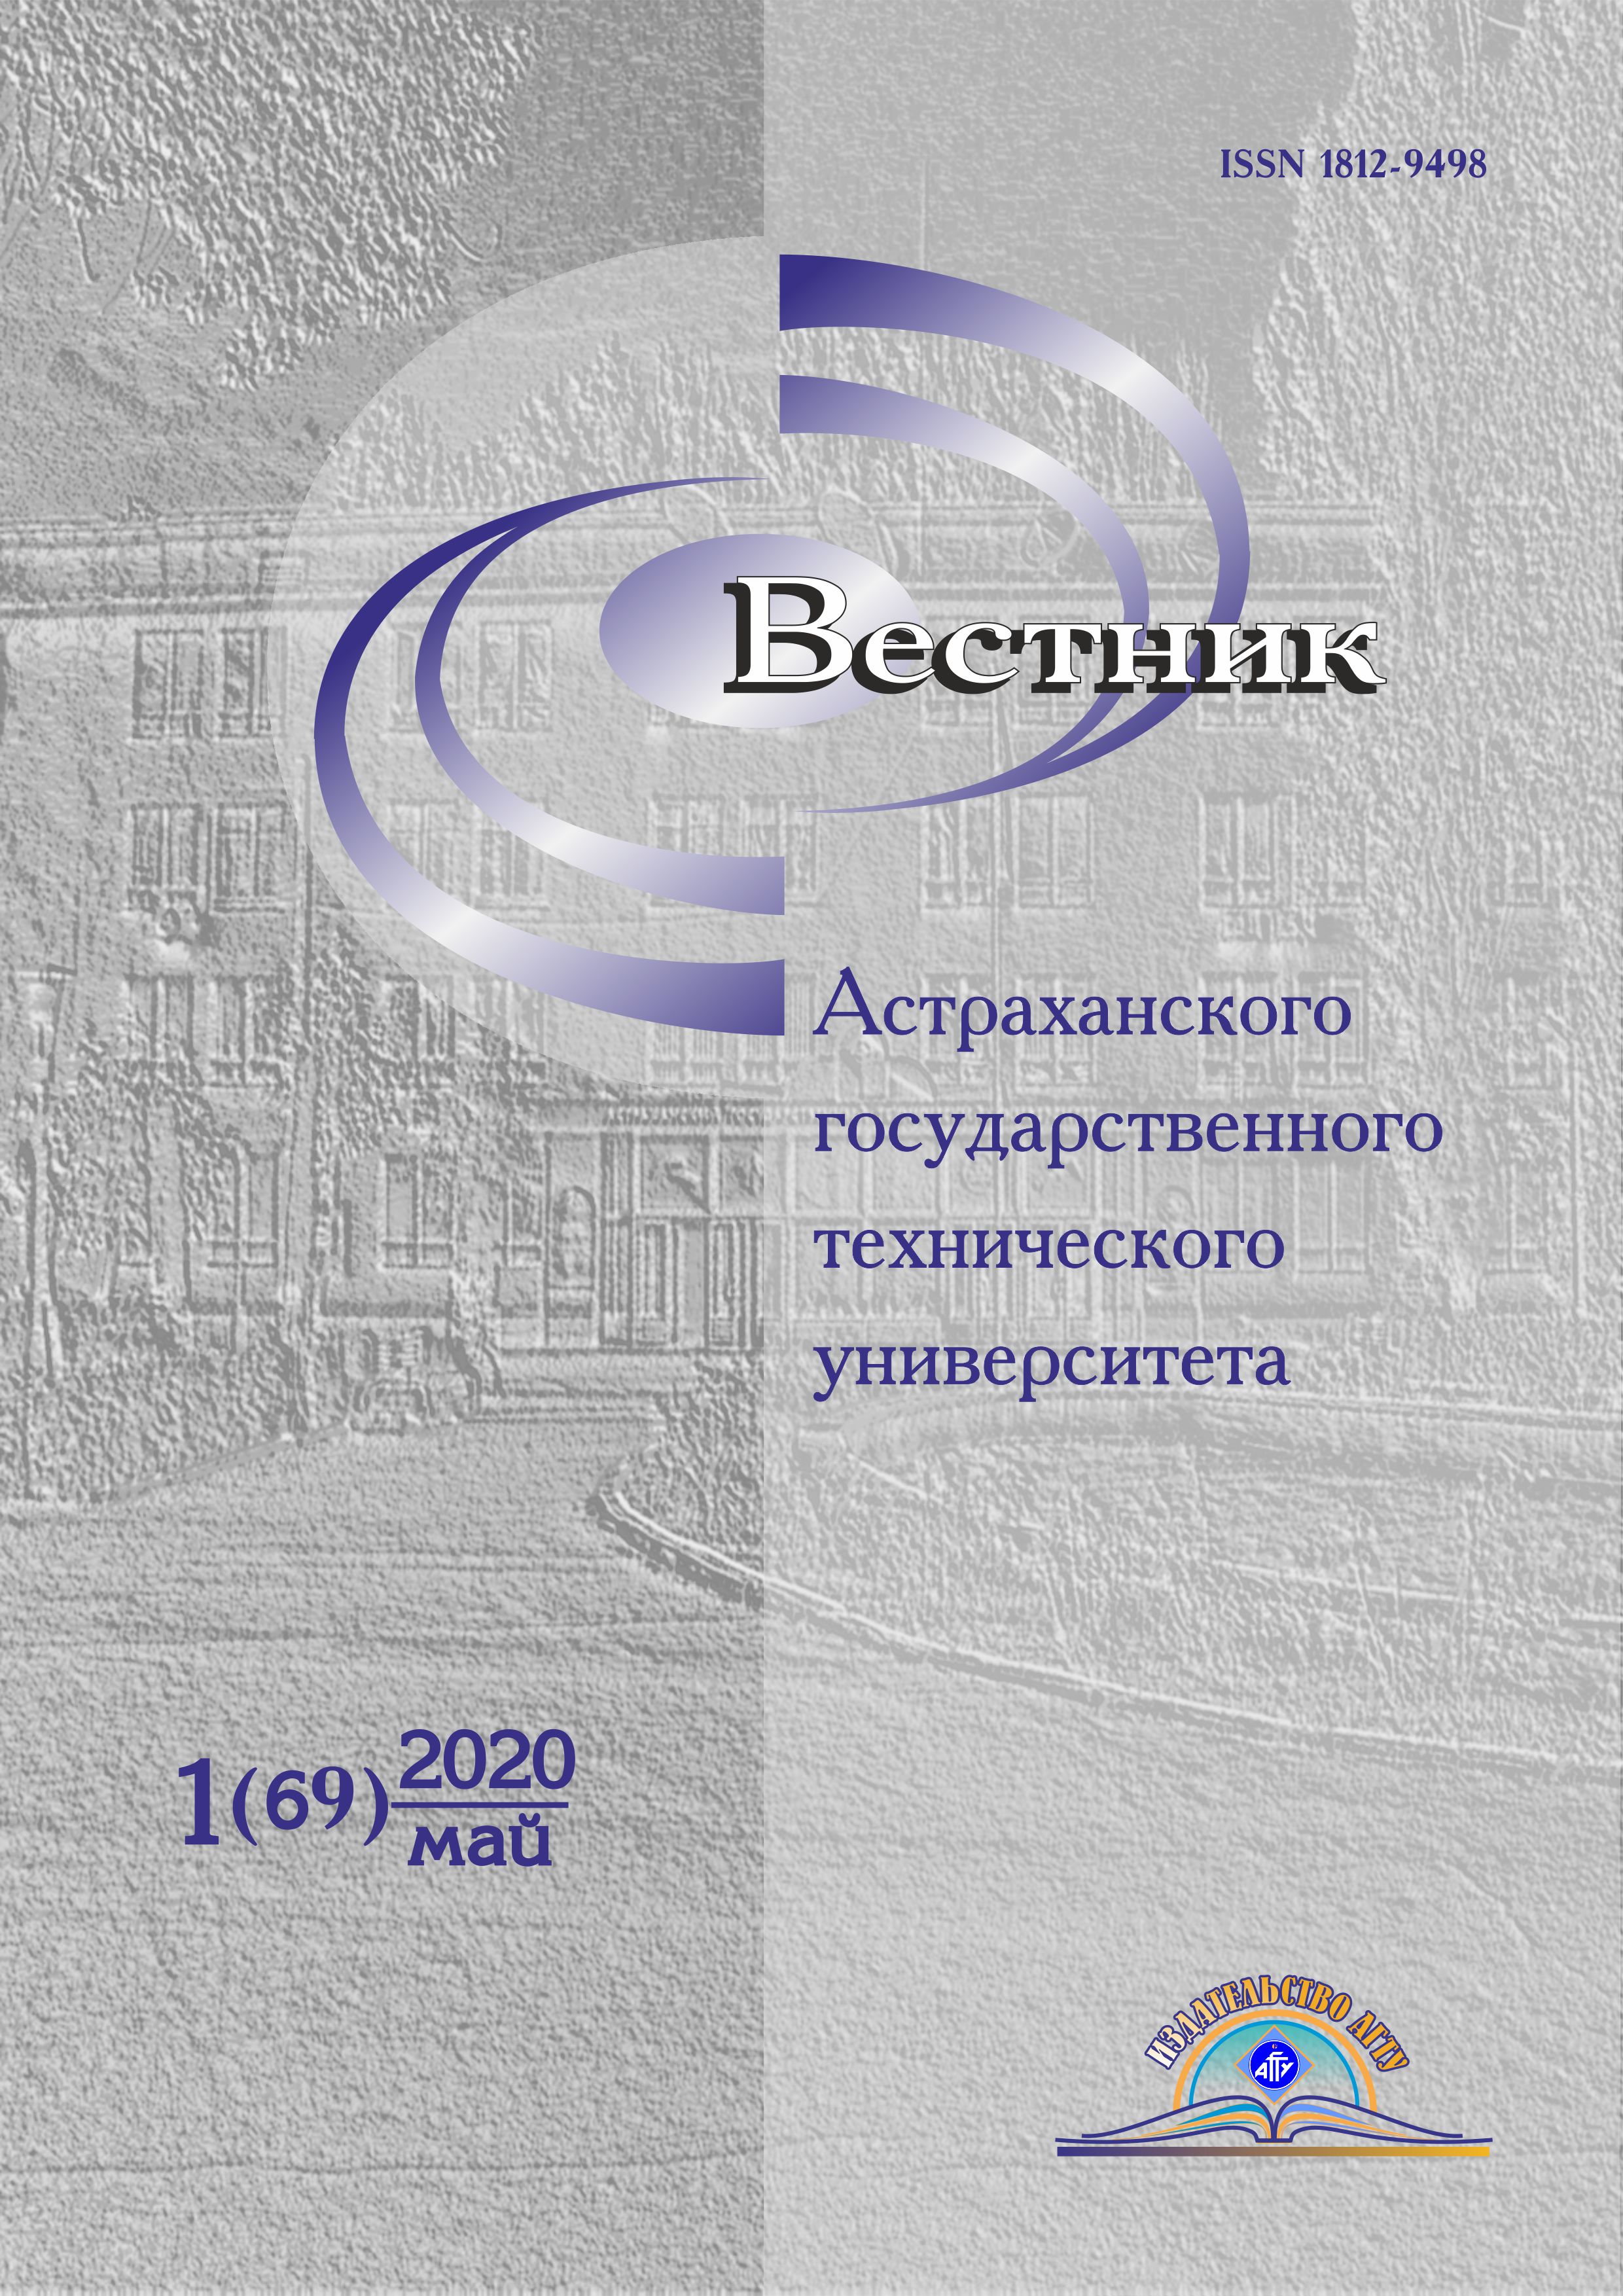             Вестник Астраханского государственного технического университета
    